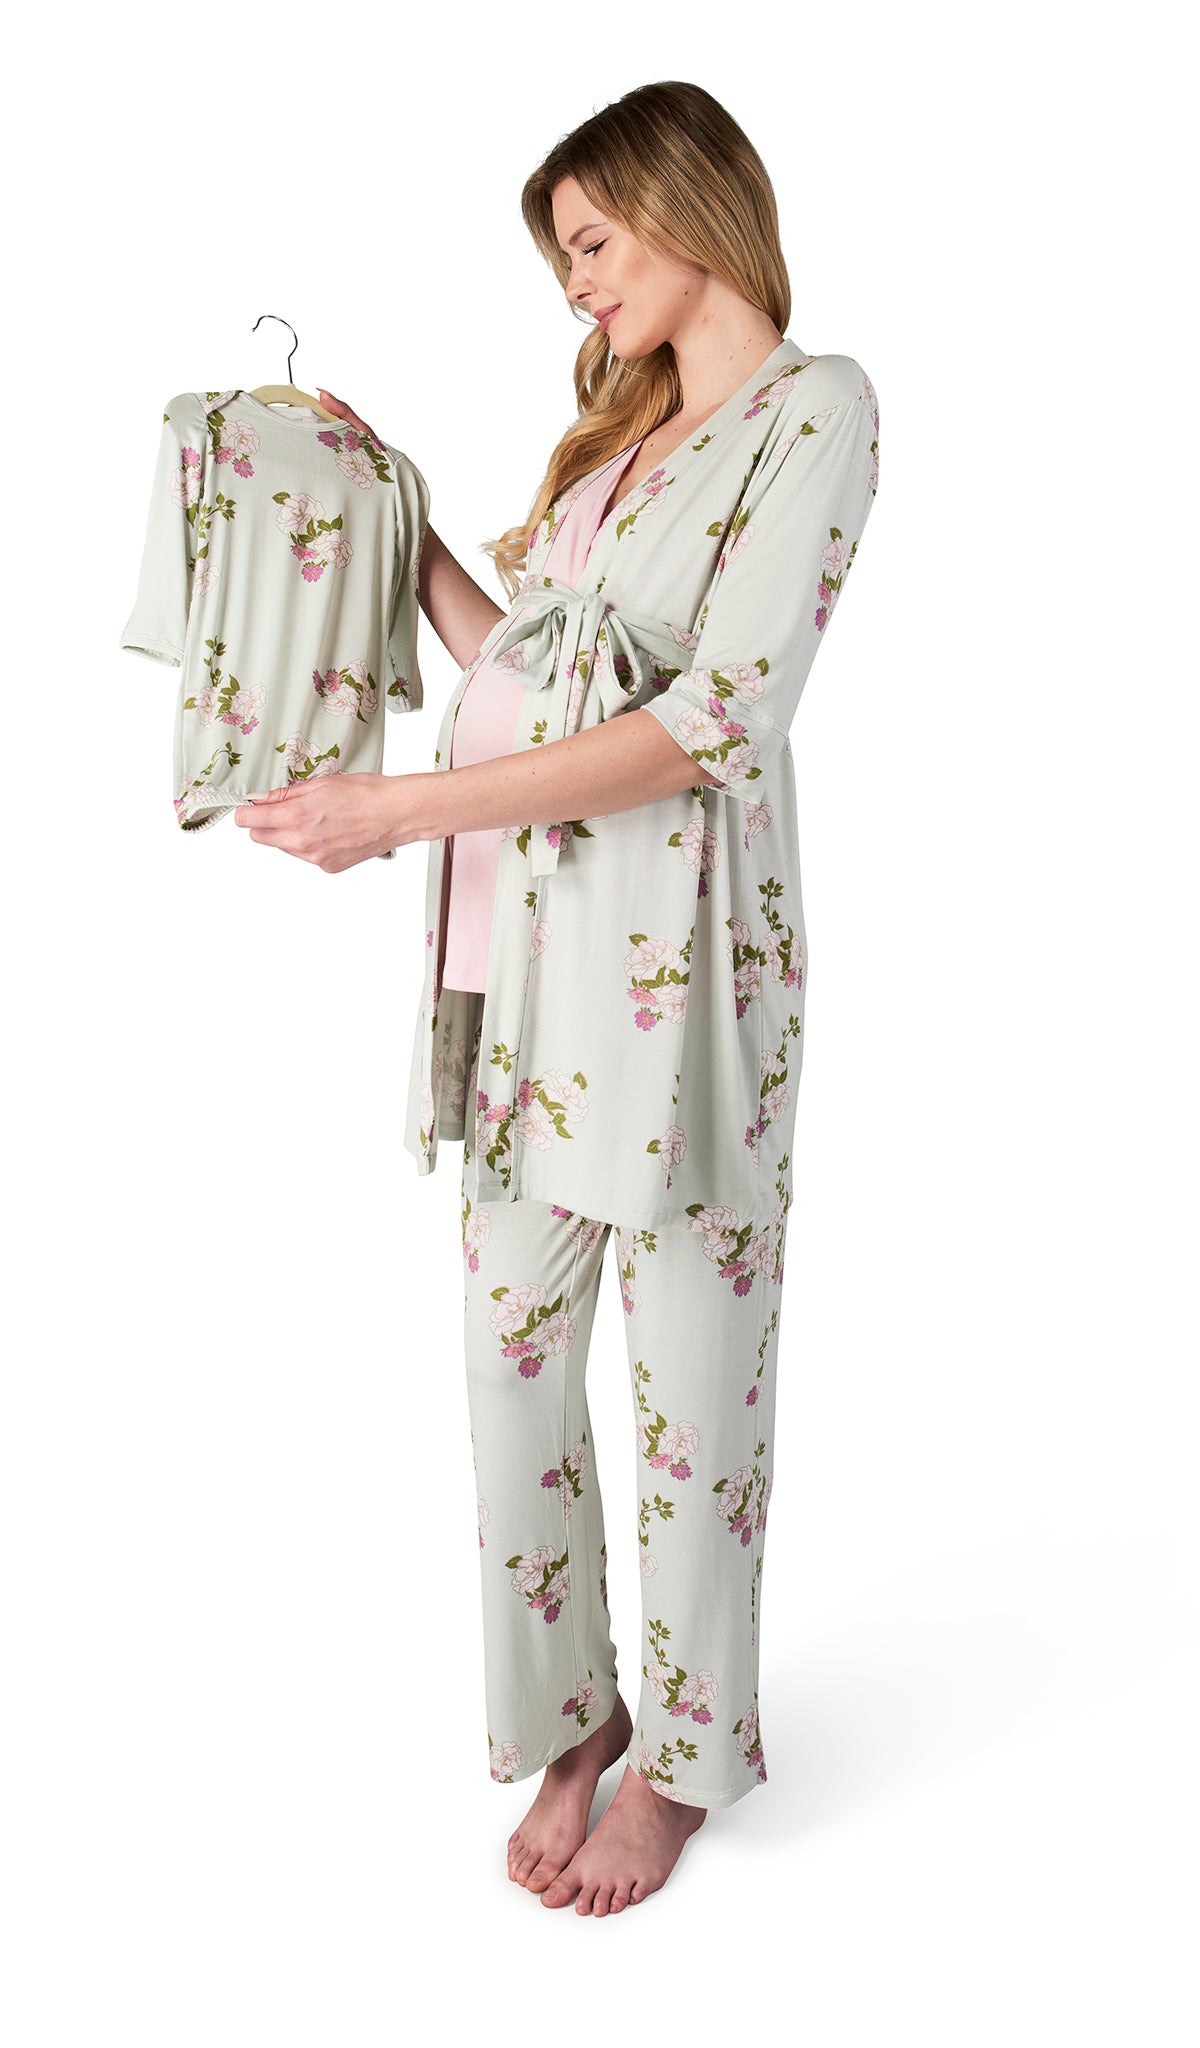 LASCANA MATERNITY SET - Pyjama set - grey melange/grey 